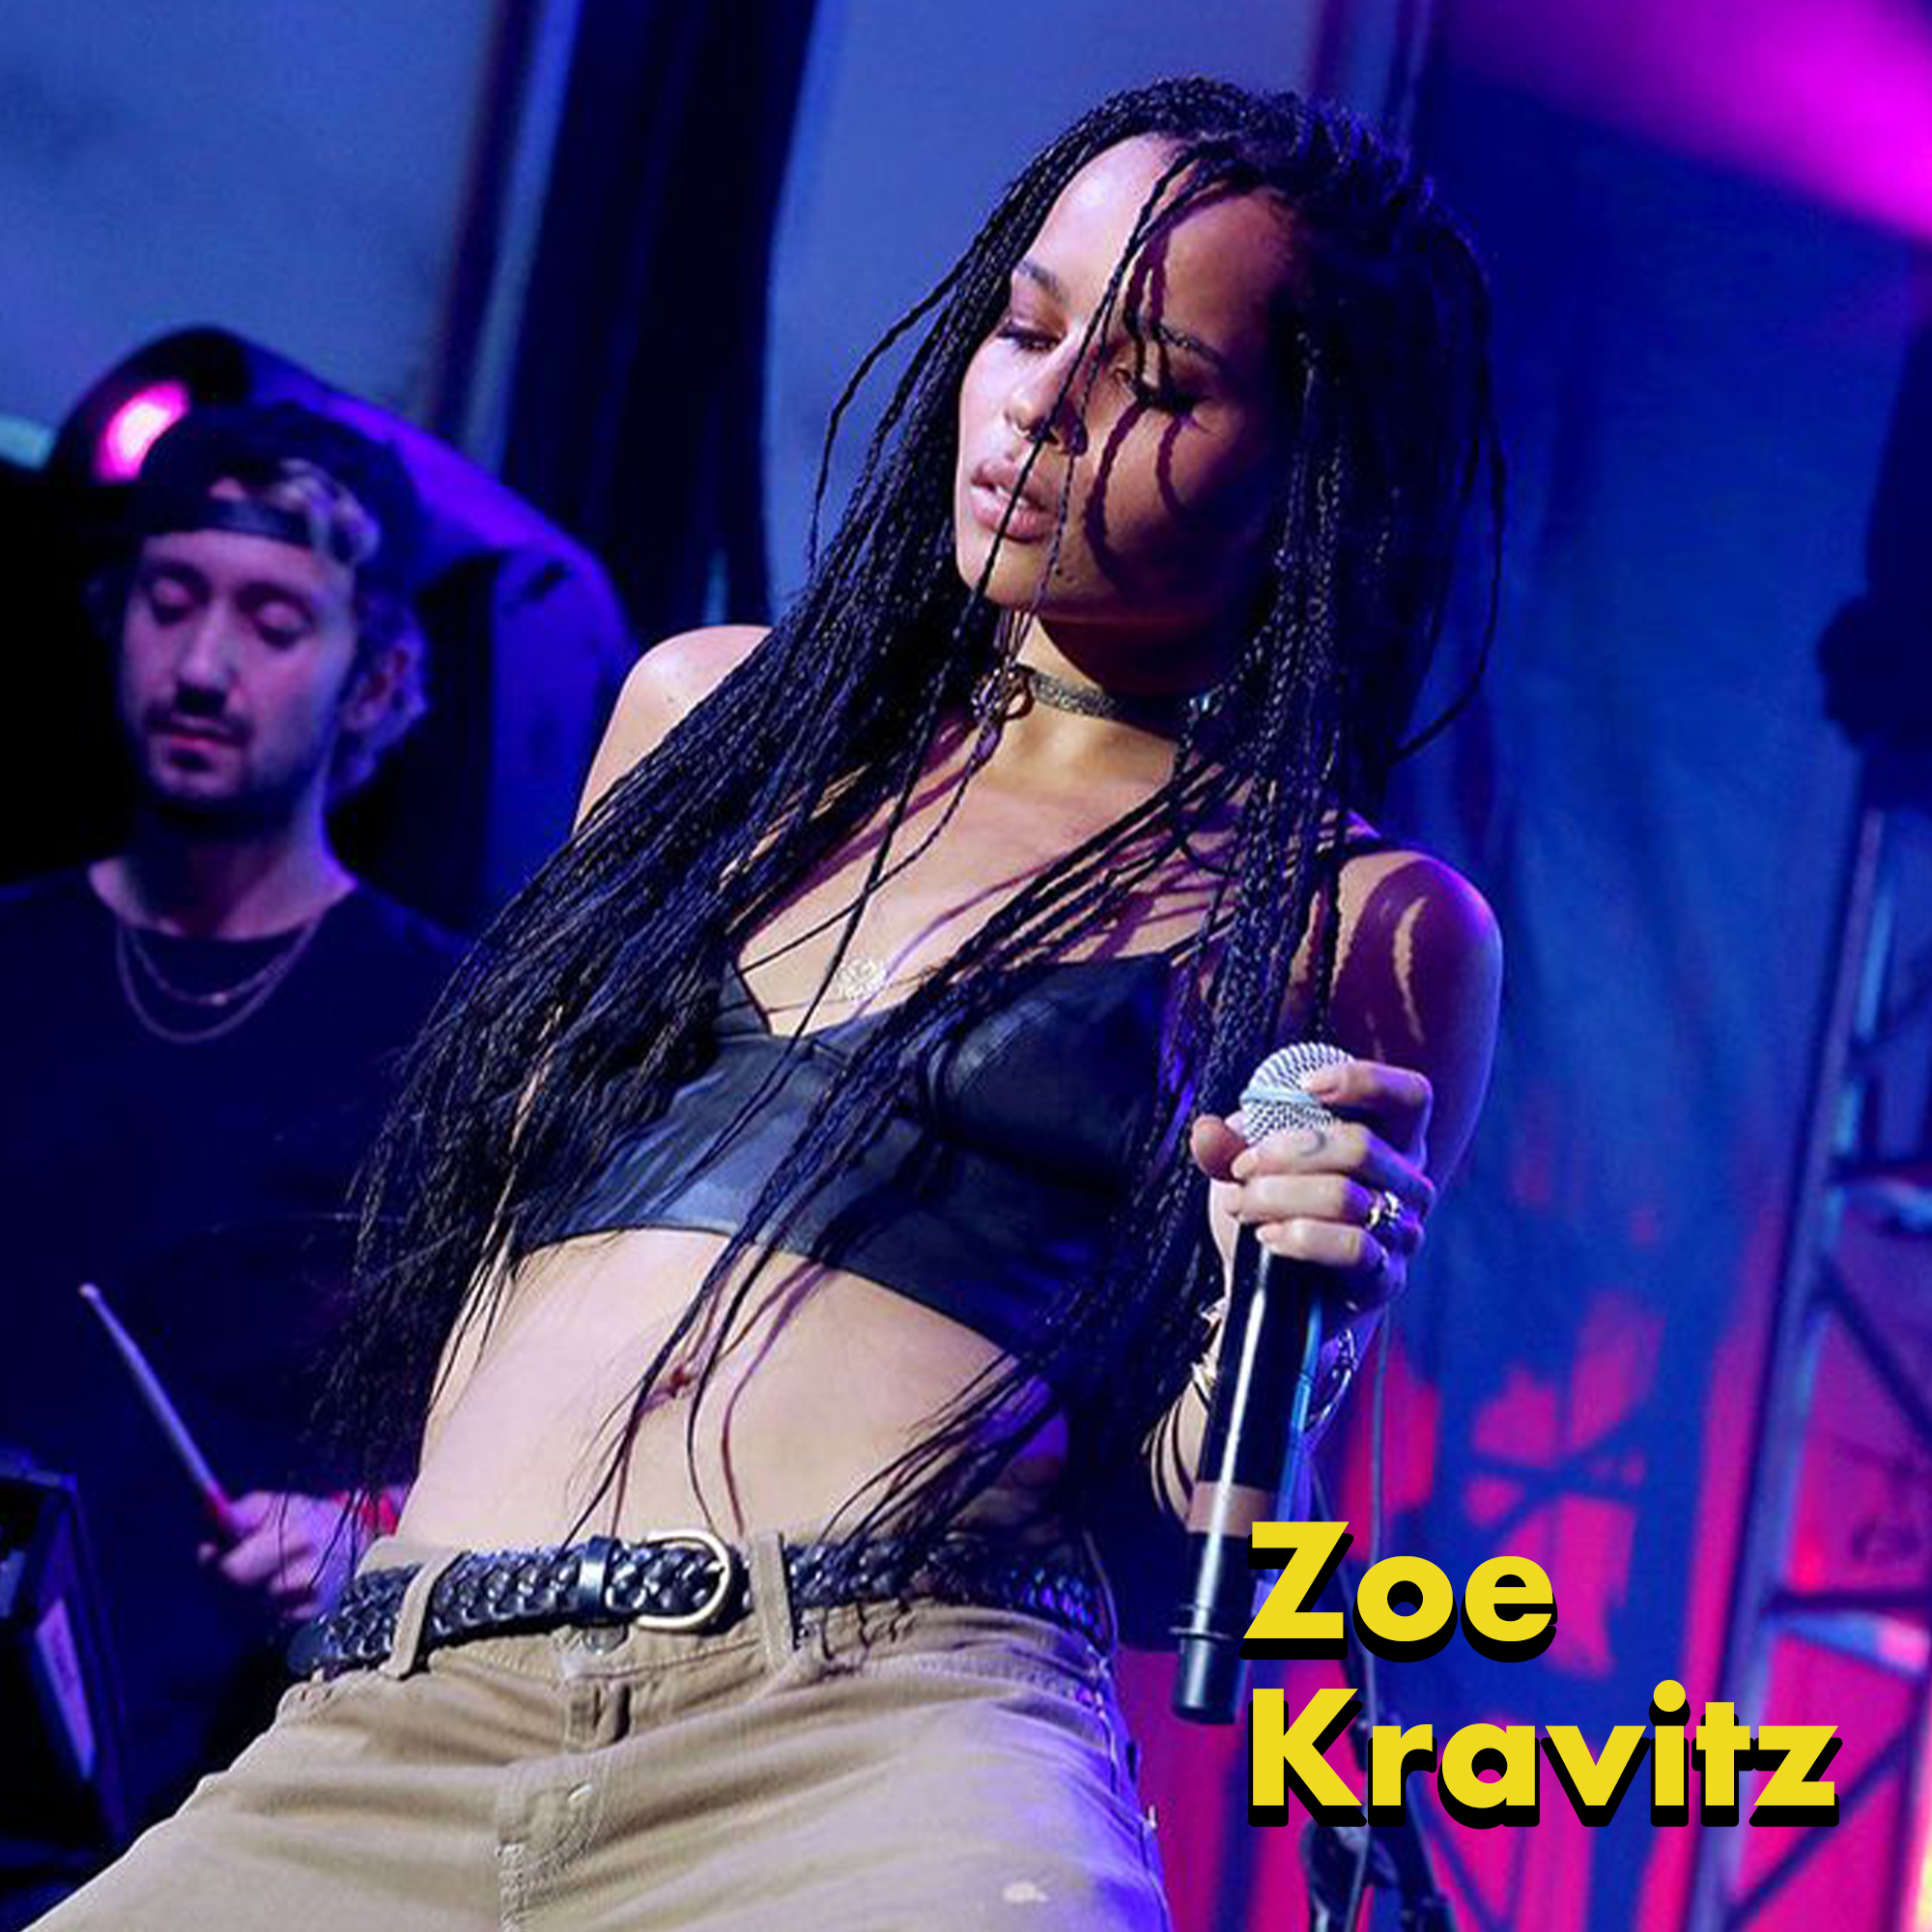 actors in bands - music artist - Zoe Kravitz